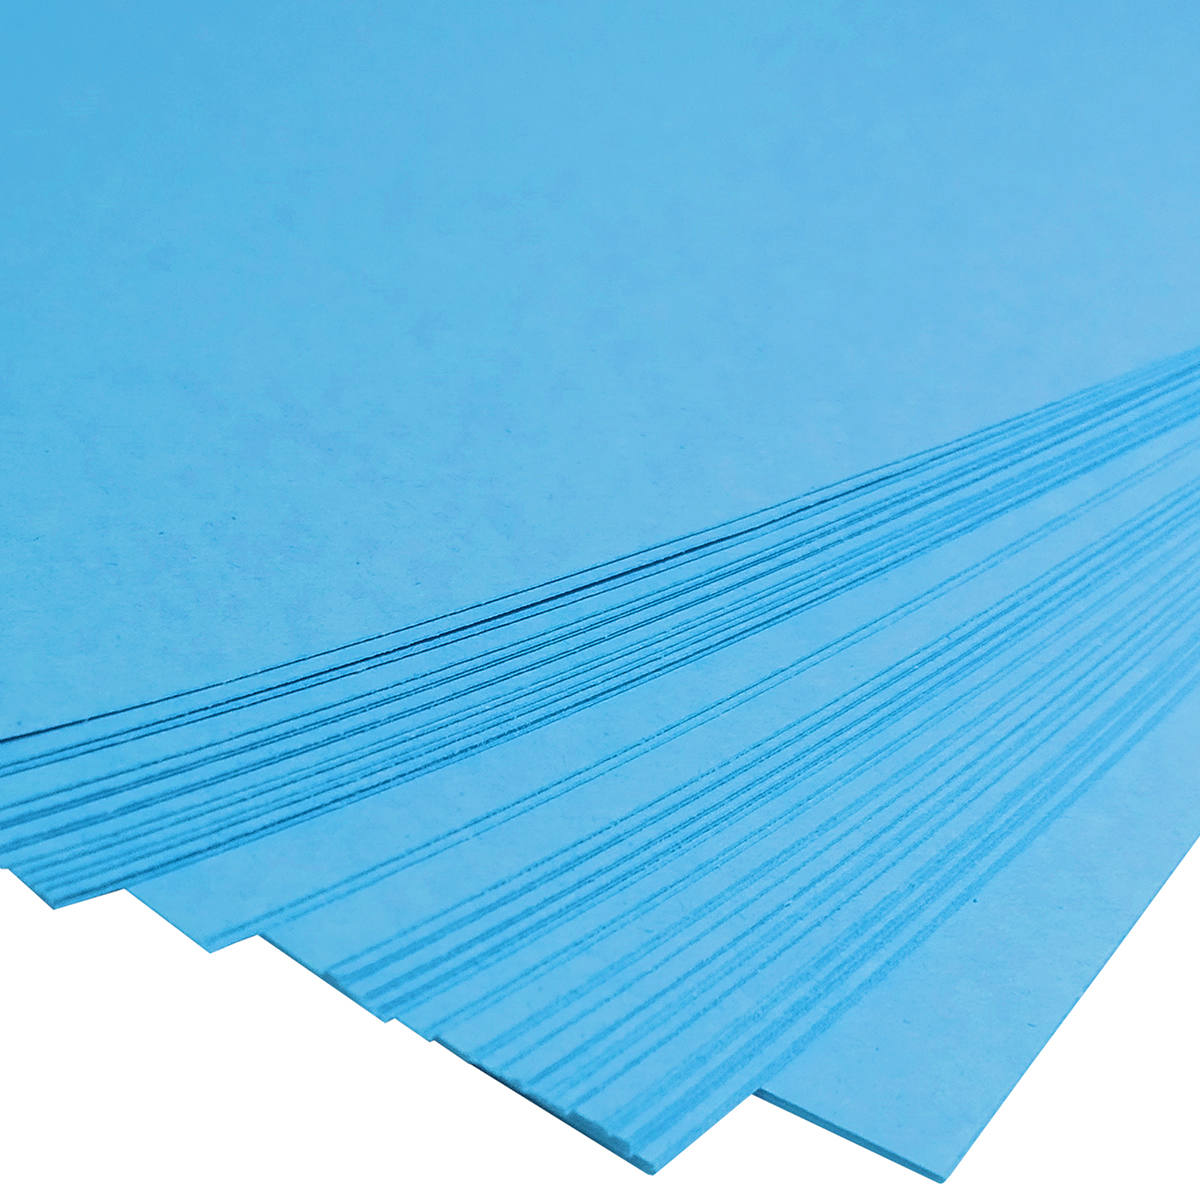 Papel Azul Diplomata Opaline Offset Liso 180g A4 Massa Colorida Tipo Ofício 60kg Pacote com 50 folhas